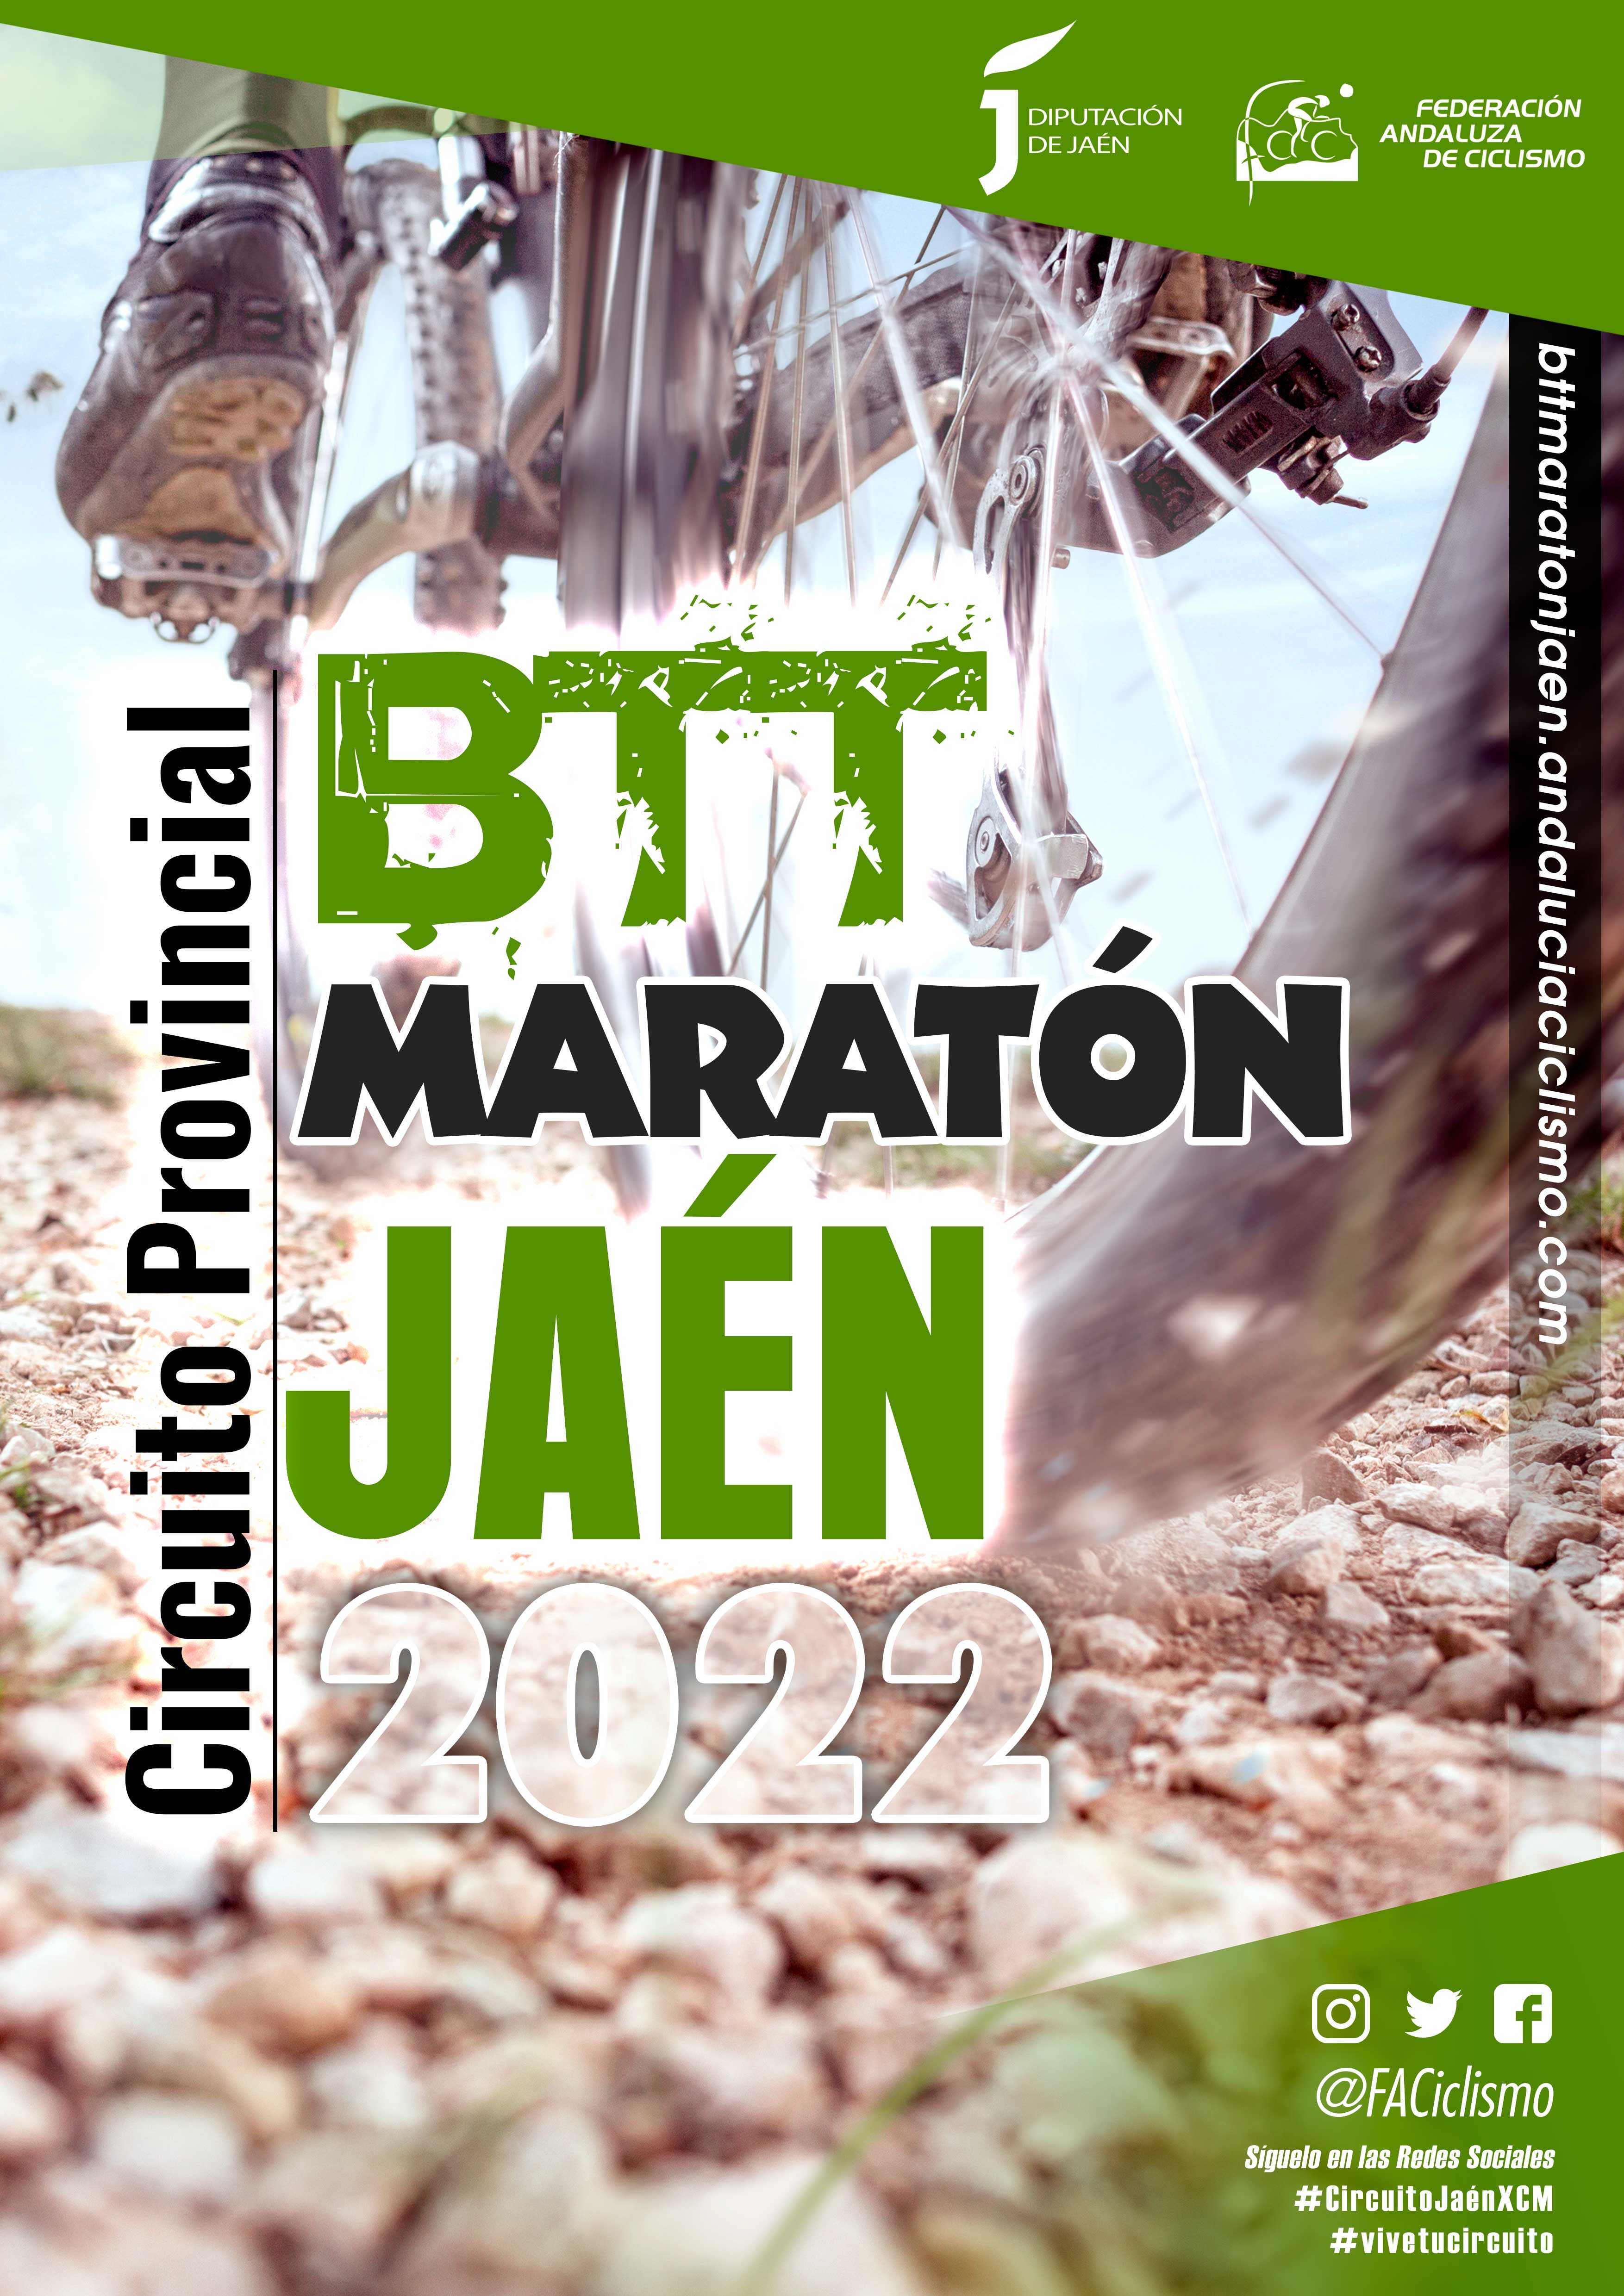 ‘La Serrana’ pondrá una marcha más al Circuito Jaén BTT Maratón 2022